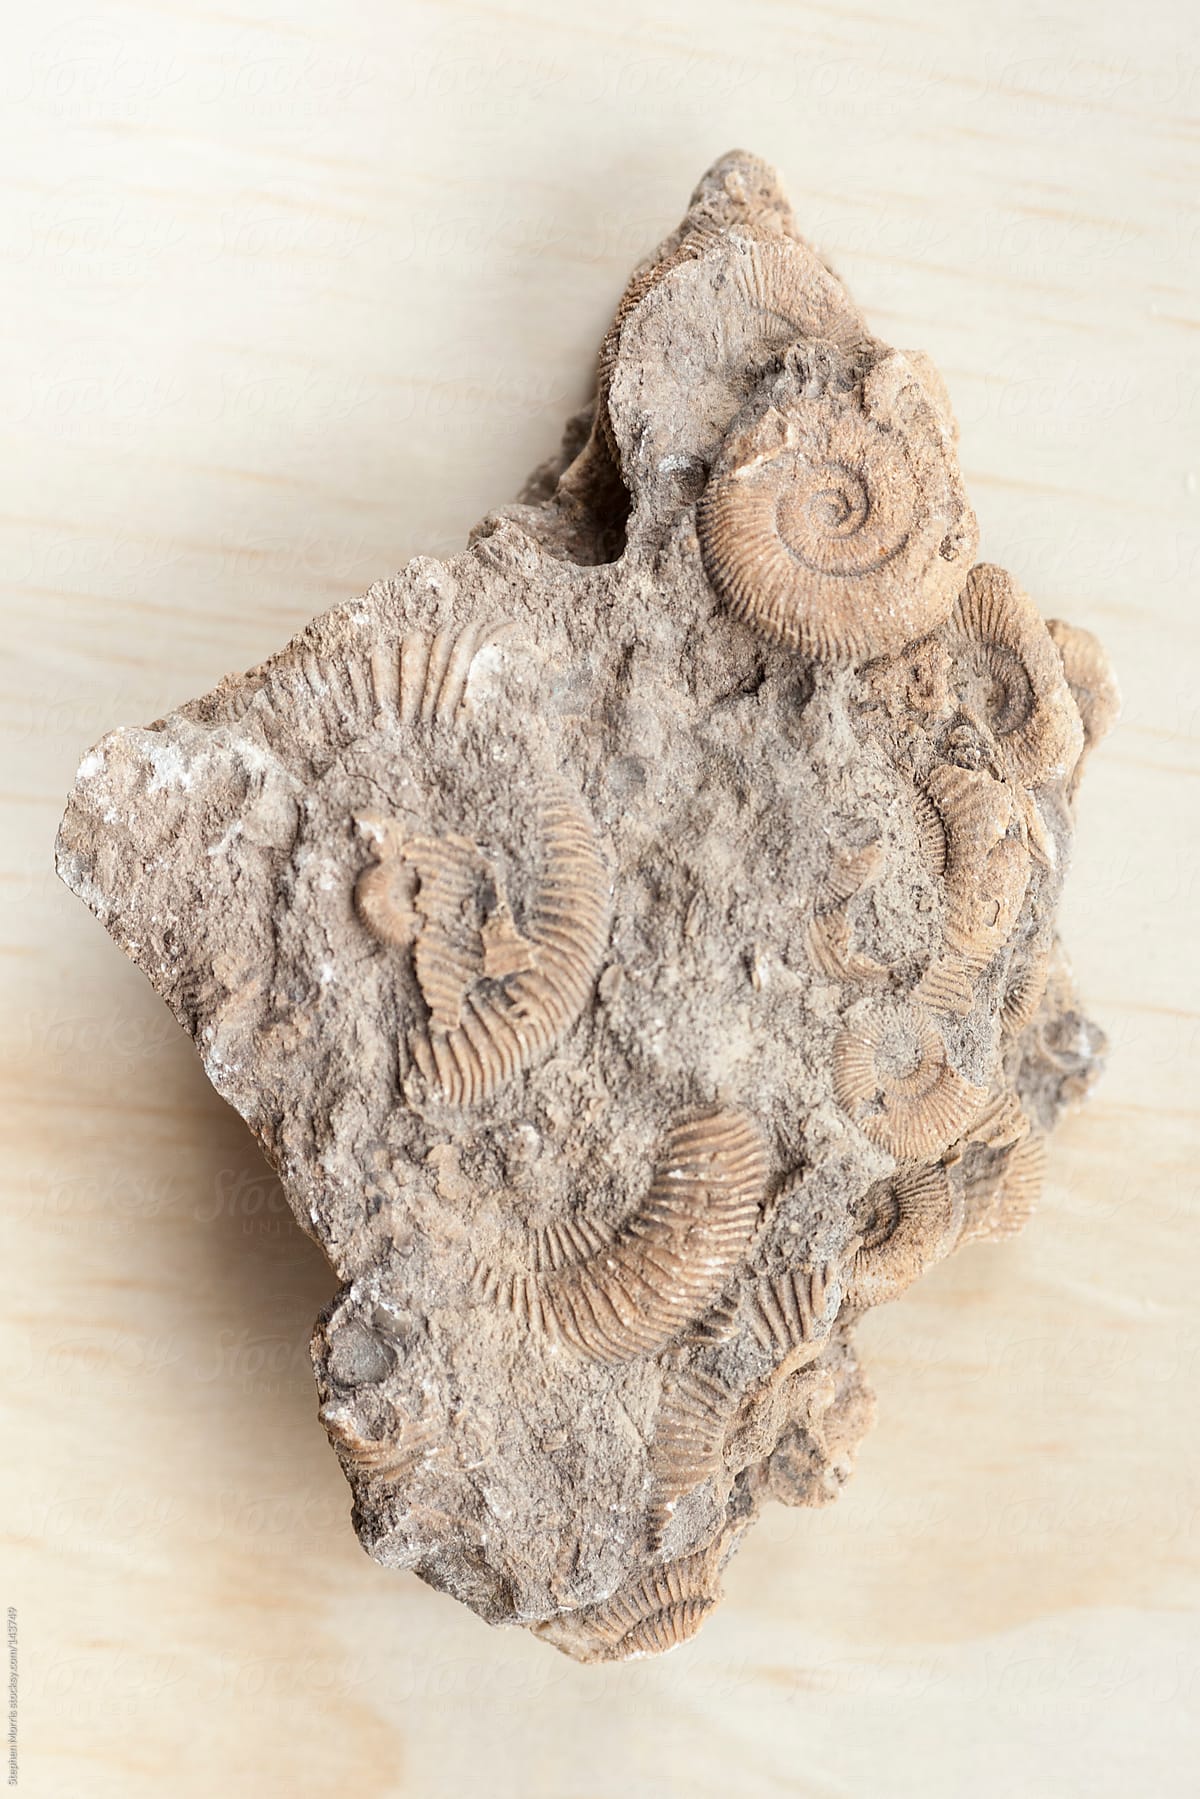 Fossilized ammonite nautilus shells